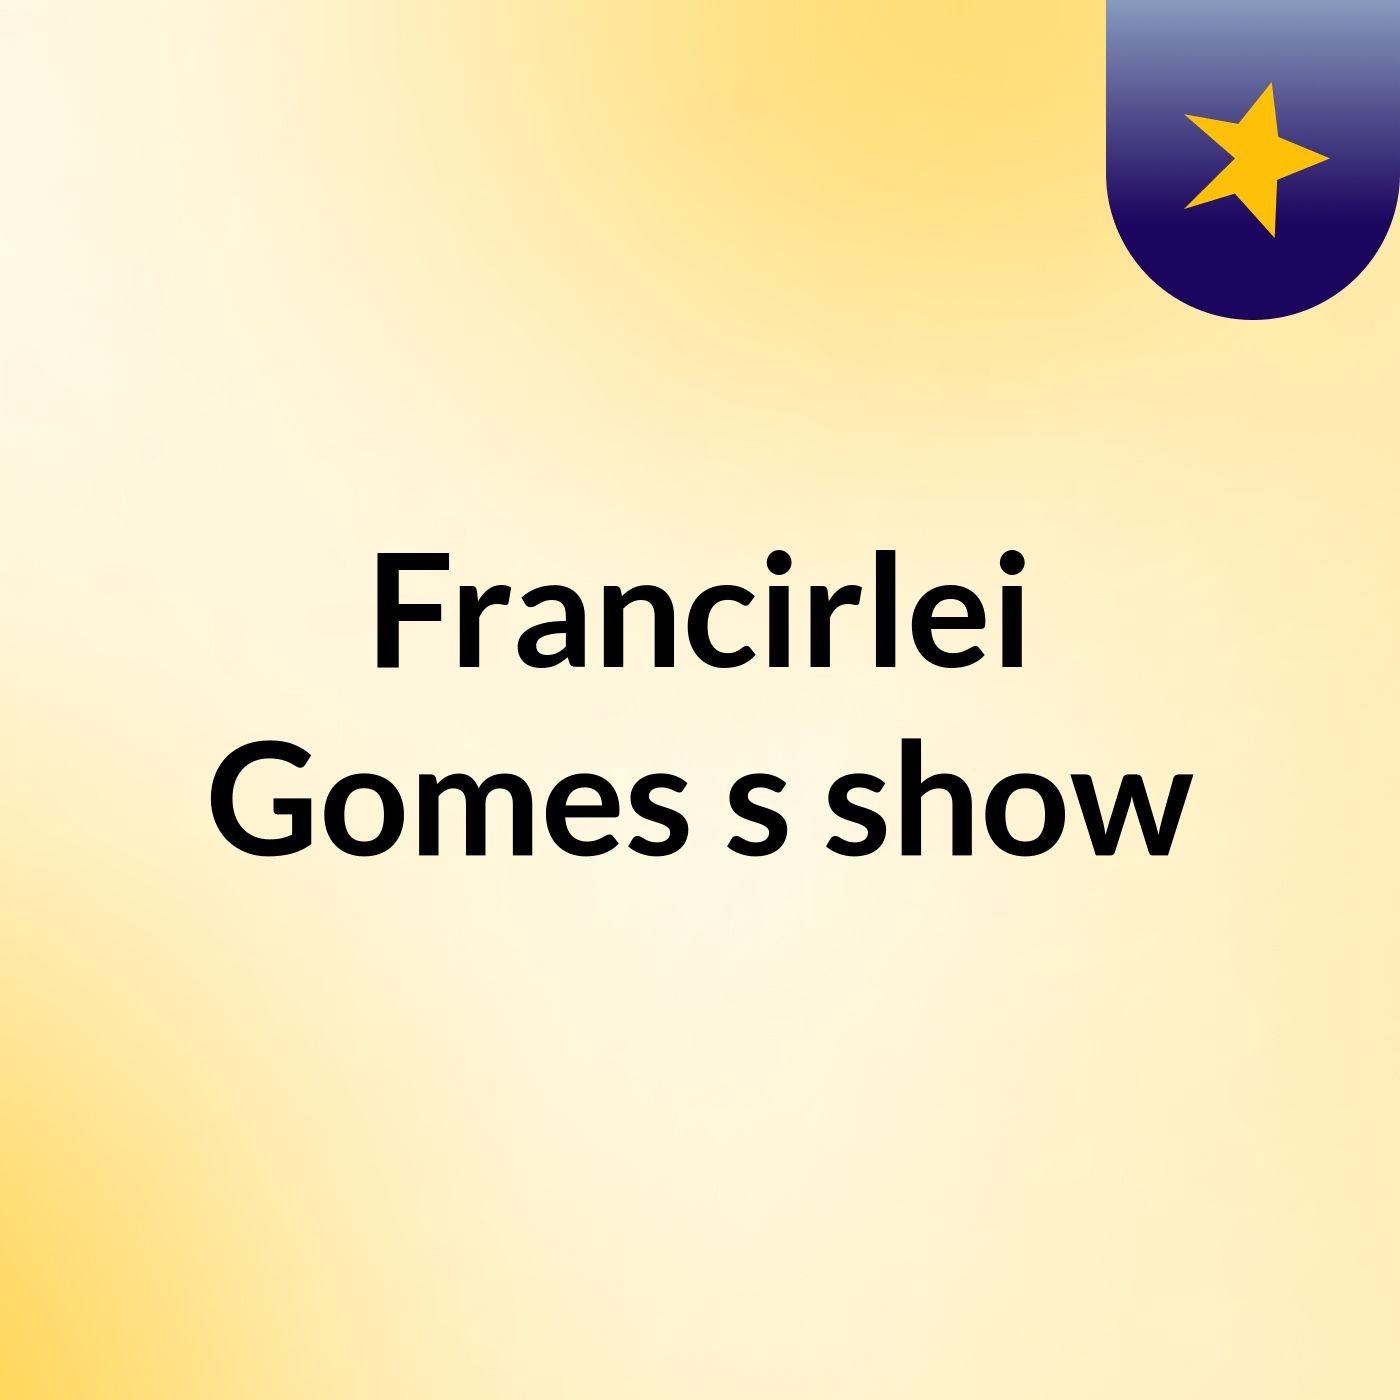 Francirlei Gomes's show